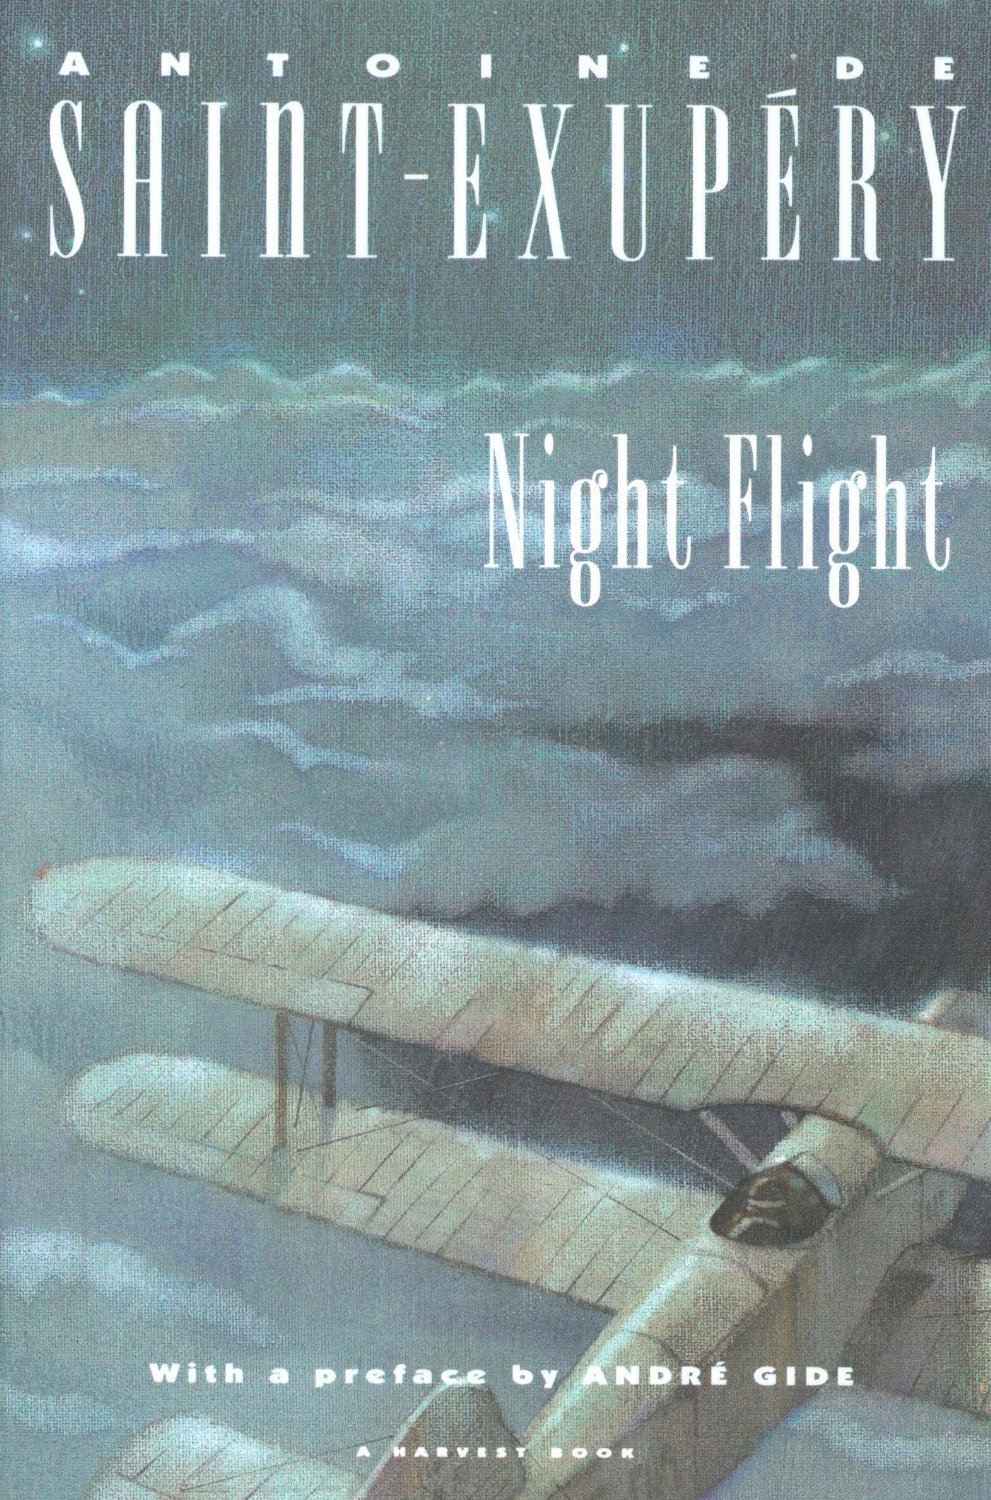 NightFlight